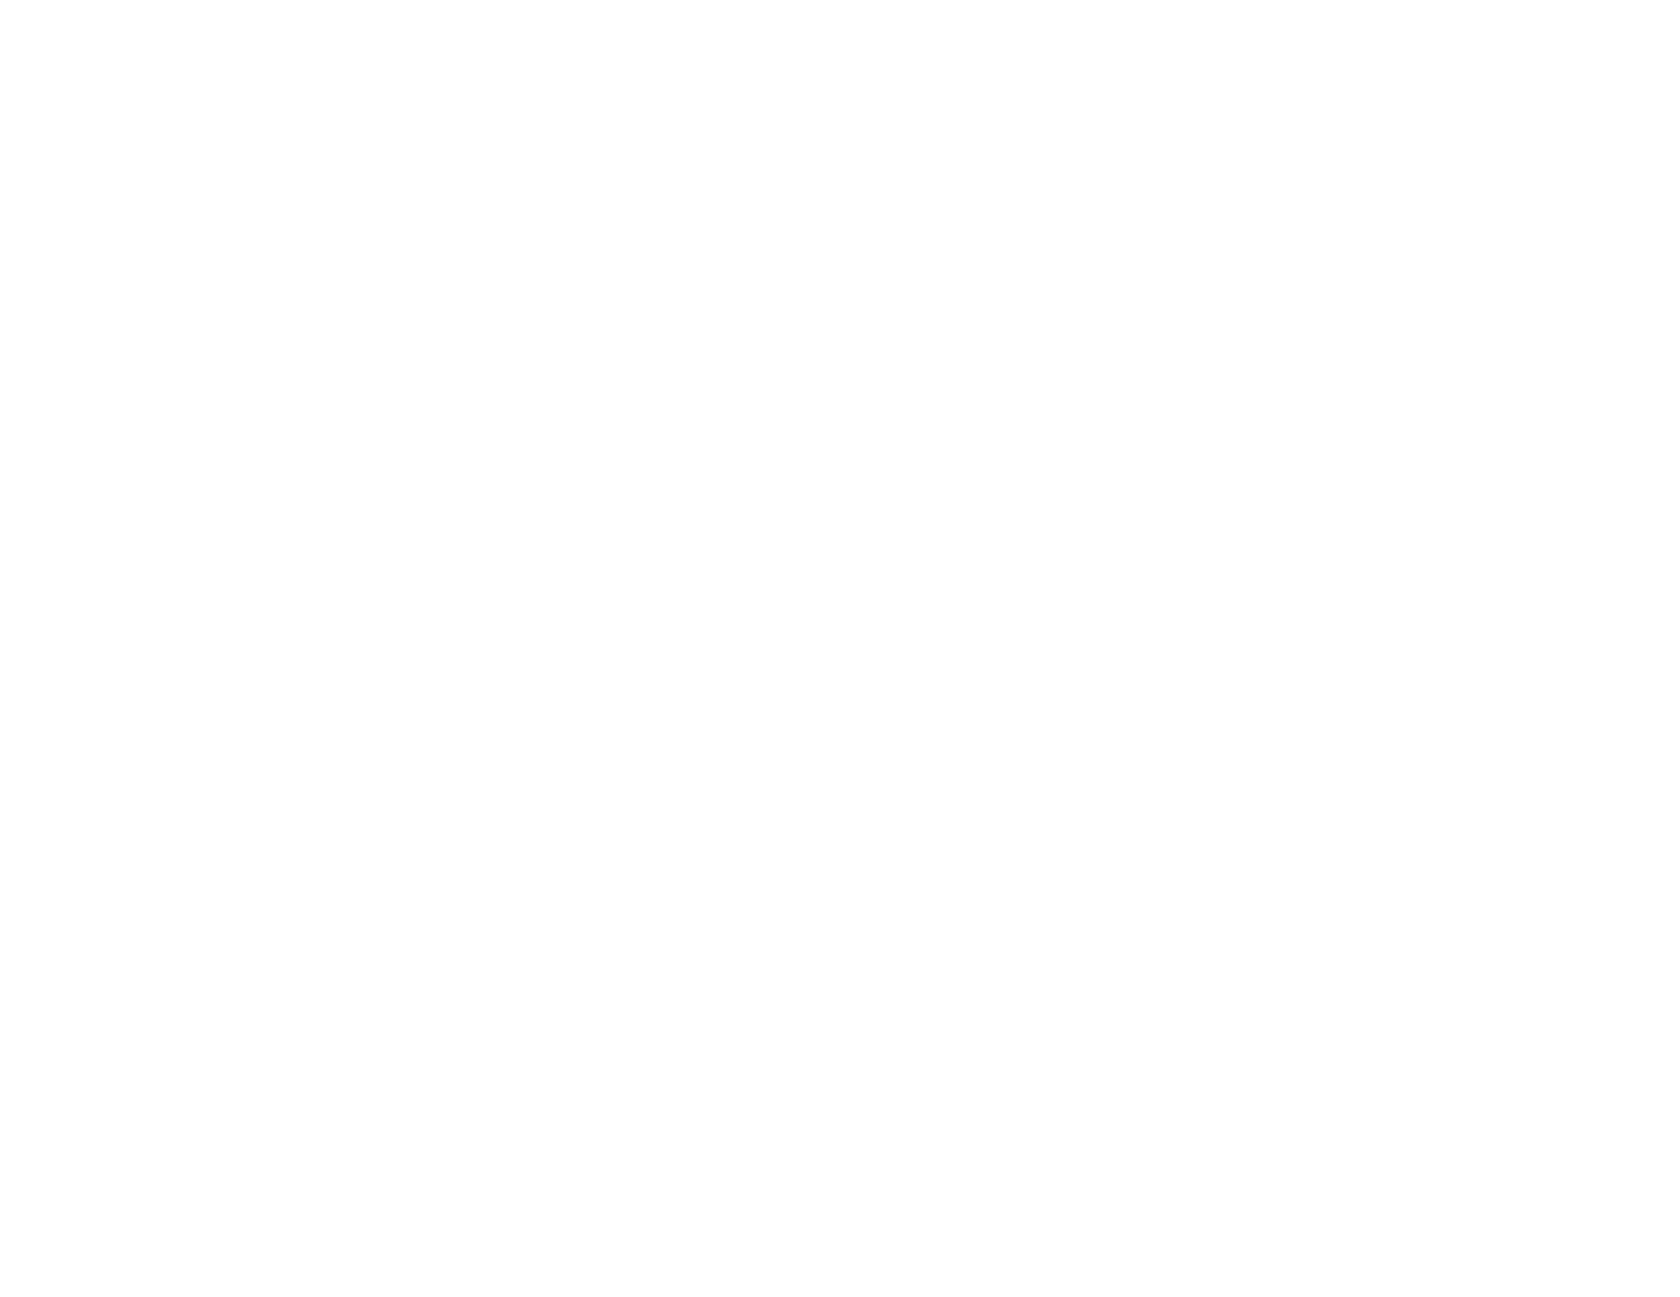 Фрагмент из прейскуранта 1910 года с изображениями внутреннего устройства фотографического магазина В. Л. Метенкова. Из собрания Музея Истории Екатеринбурга